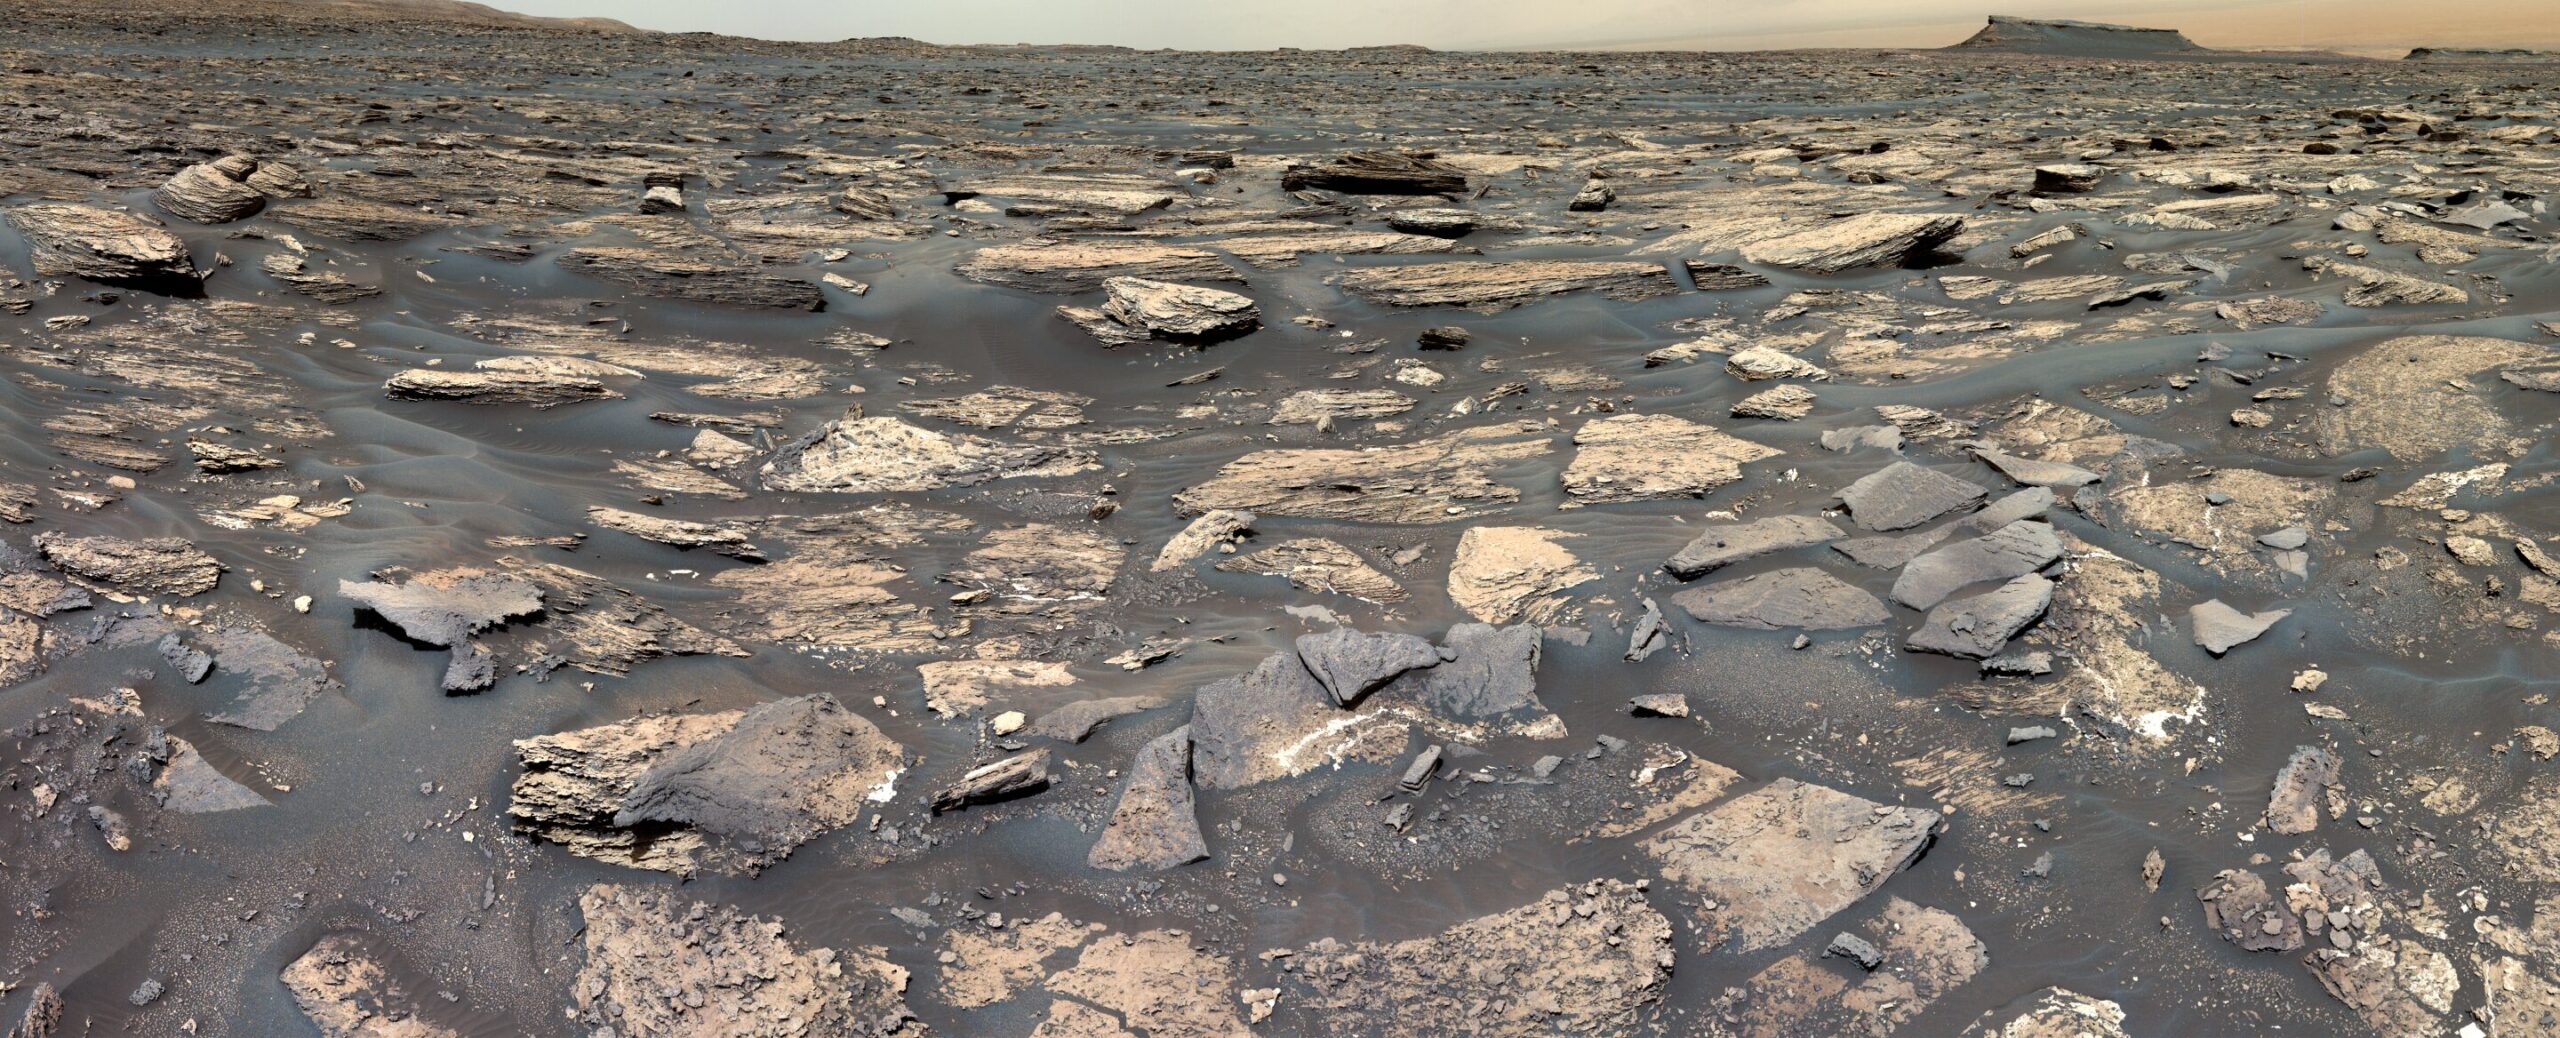 Fotografija površine Marsa. Zasluge: NASA/JPL-Caltech/MSSS.